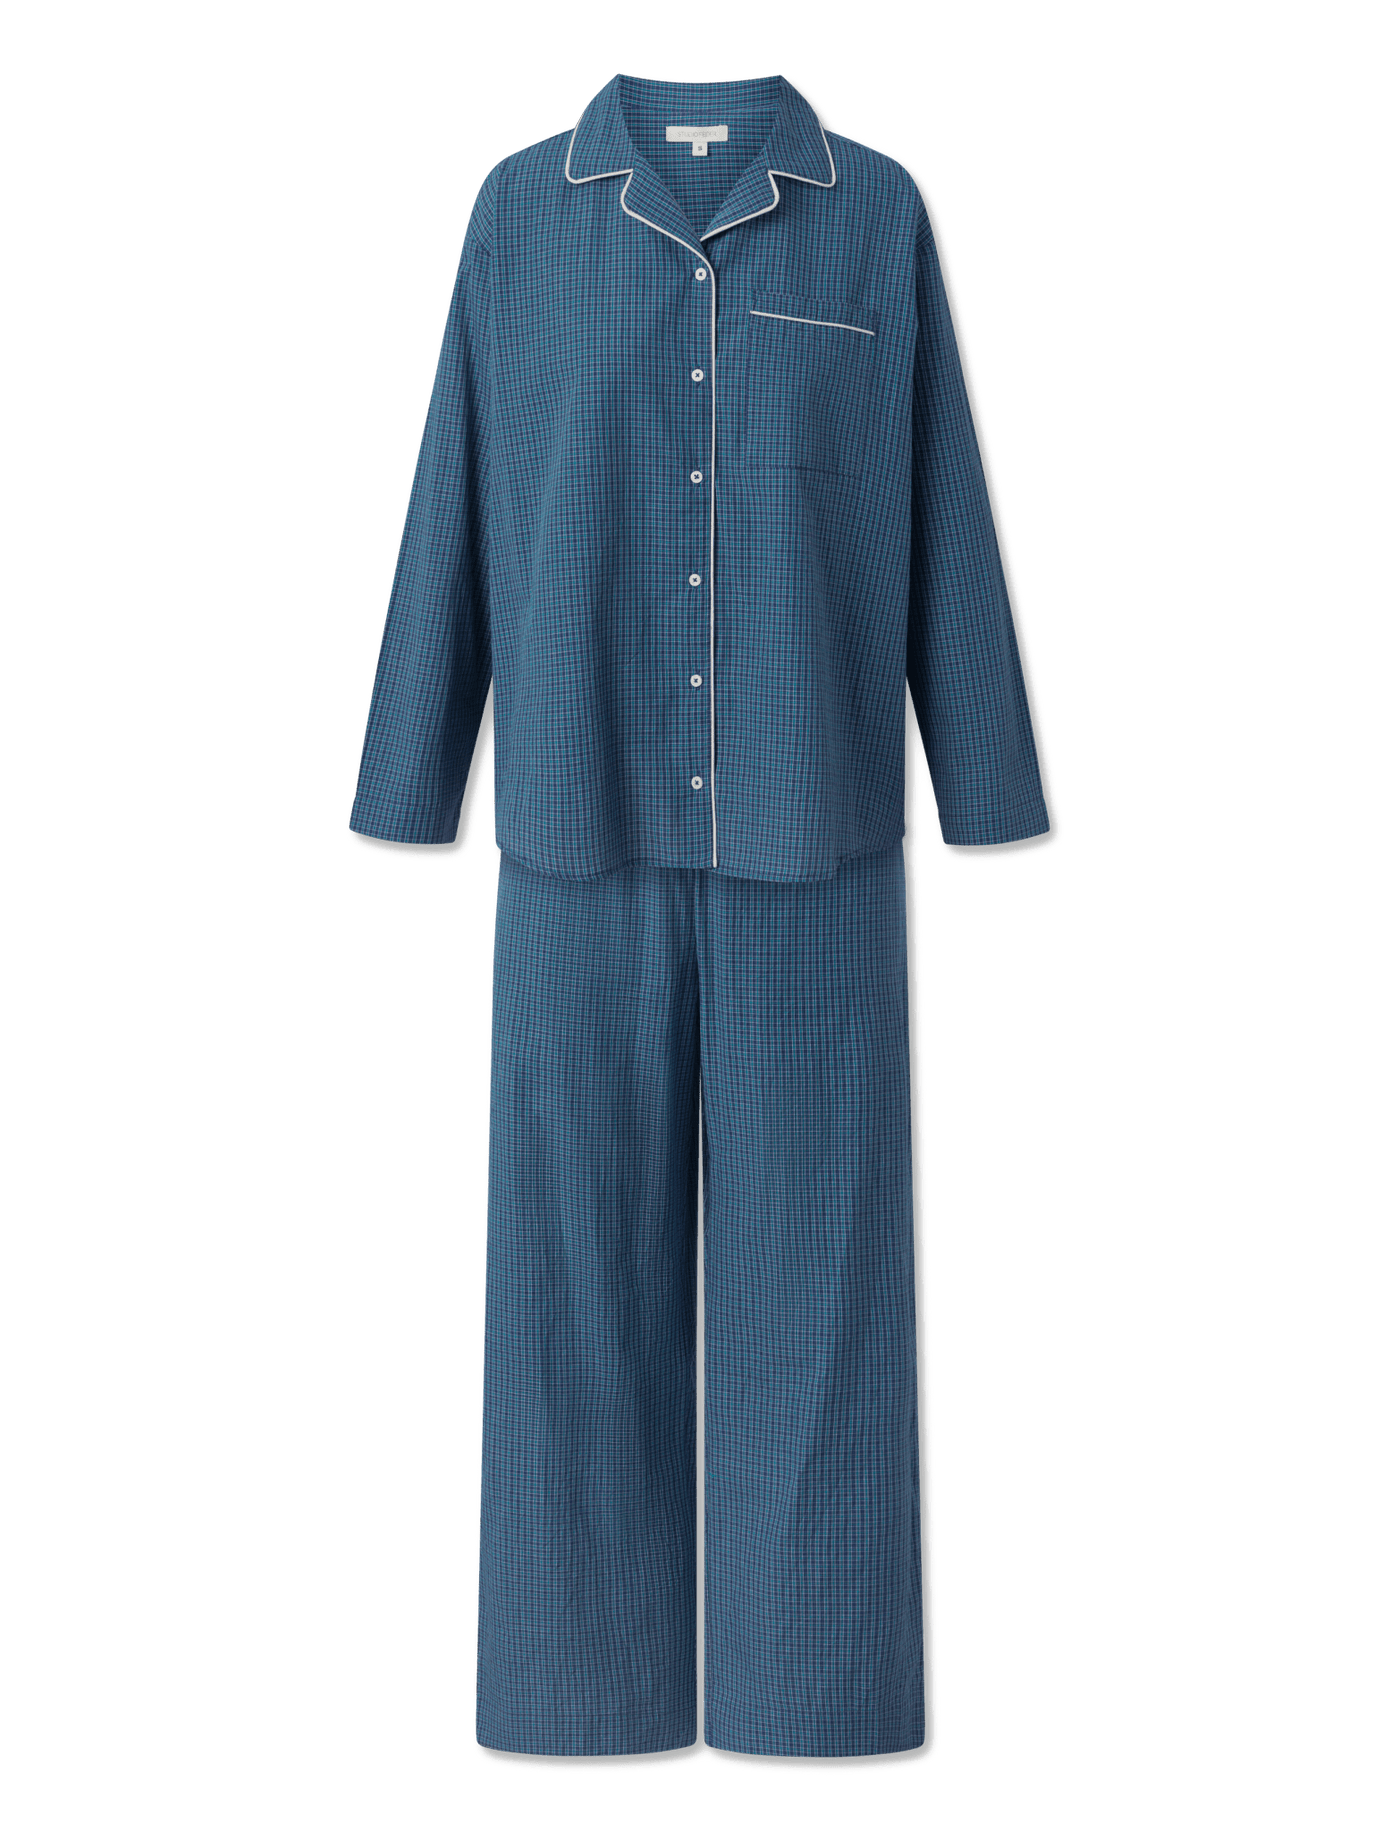 Edith pyjamas - London